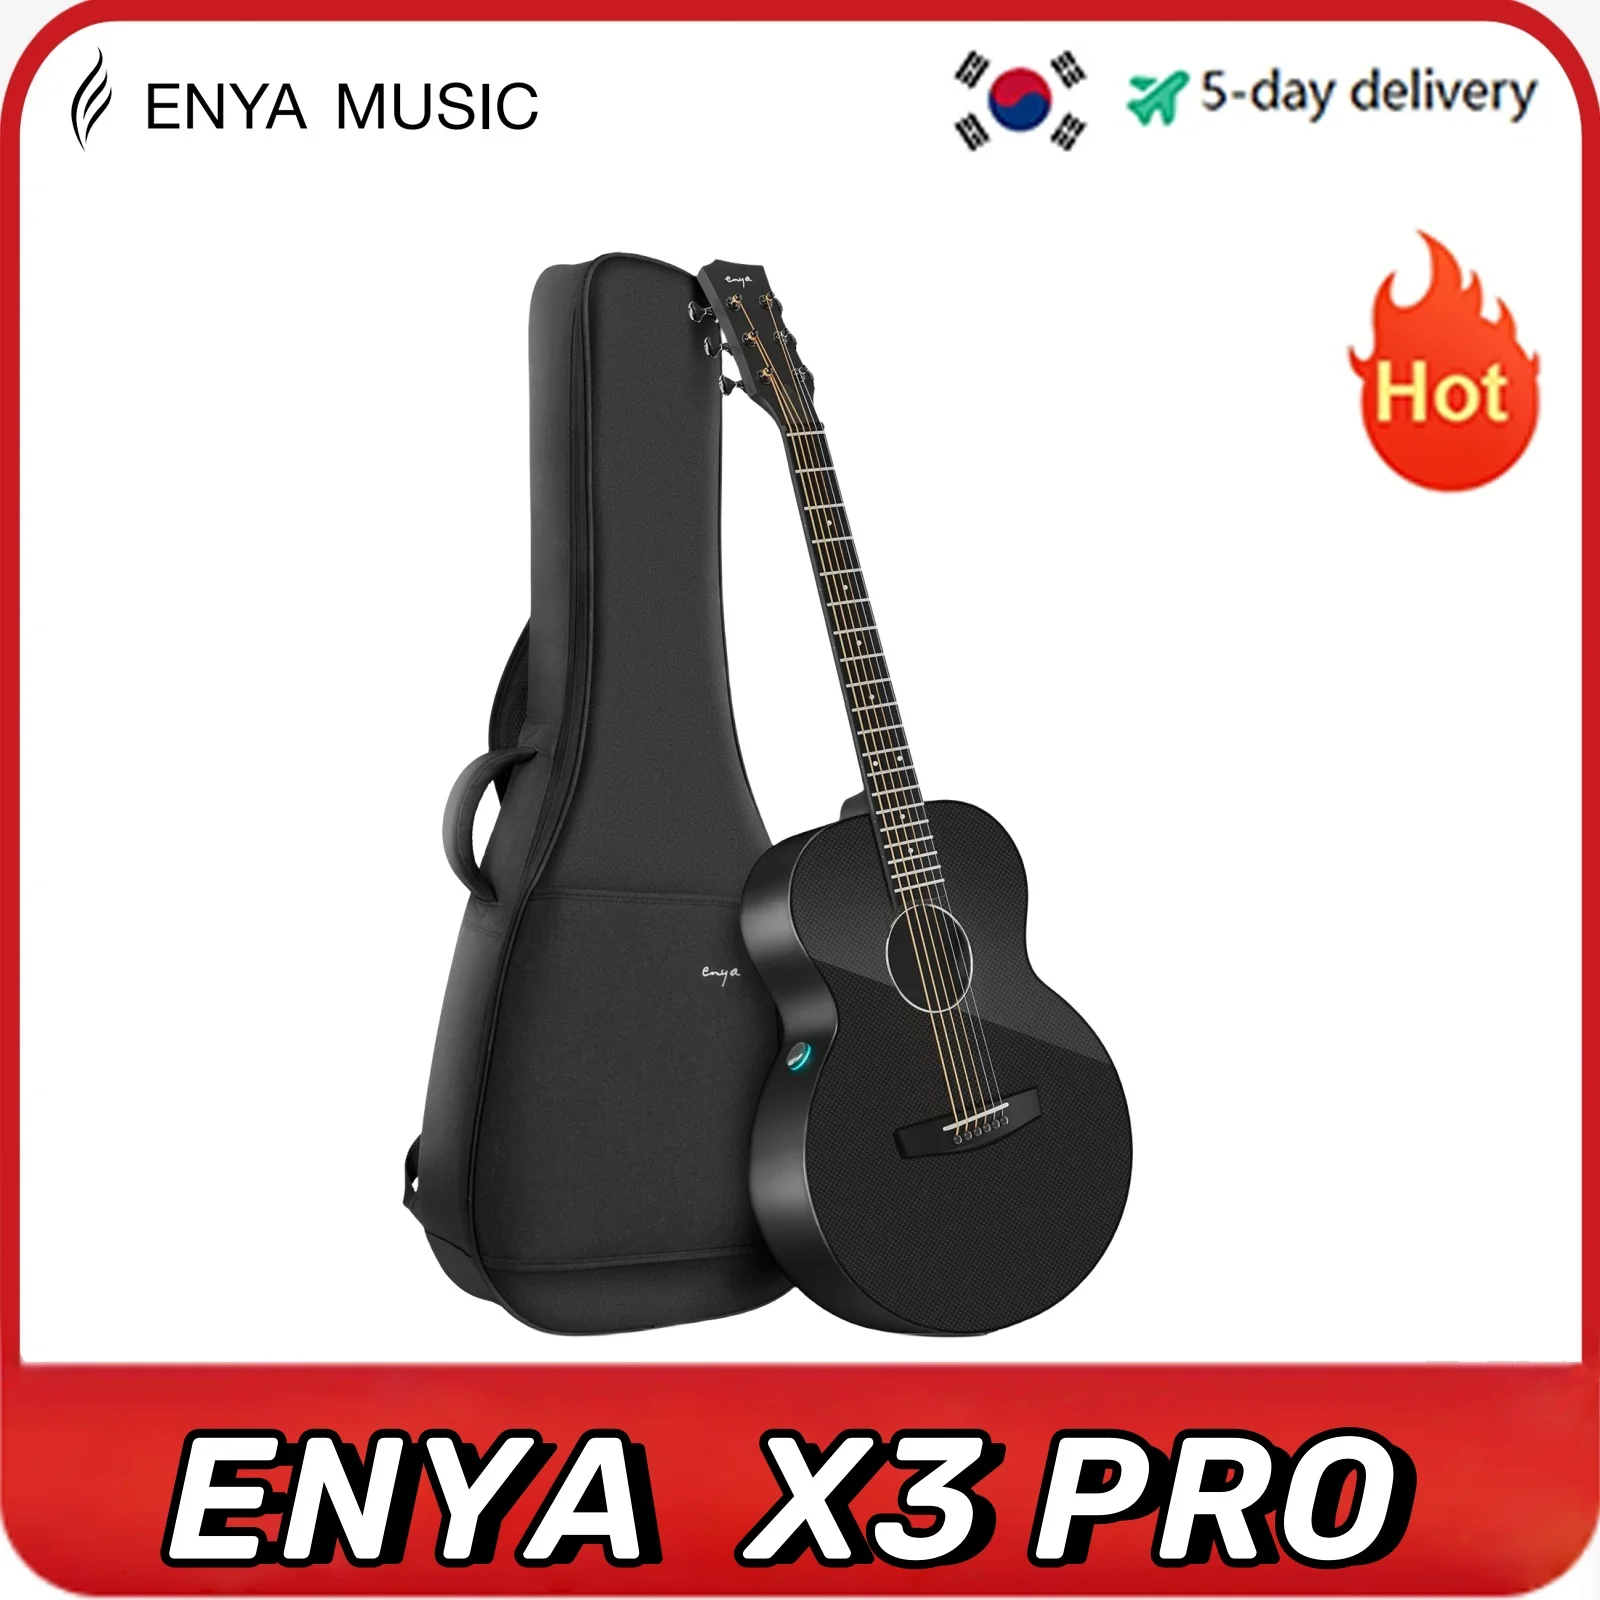 

Enya X3 Pro Acoustic Electric Guitar Carbon Fiber Travel Guitar AcousticPlus Guitar Bundle with Gig Bag, Instrument Cable